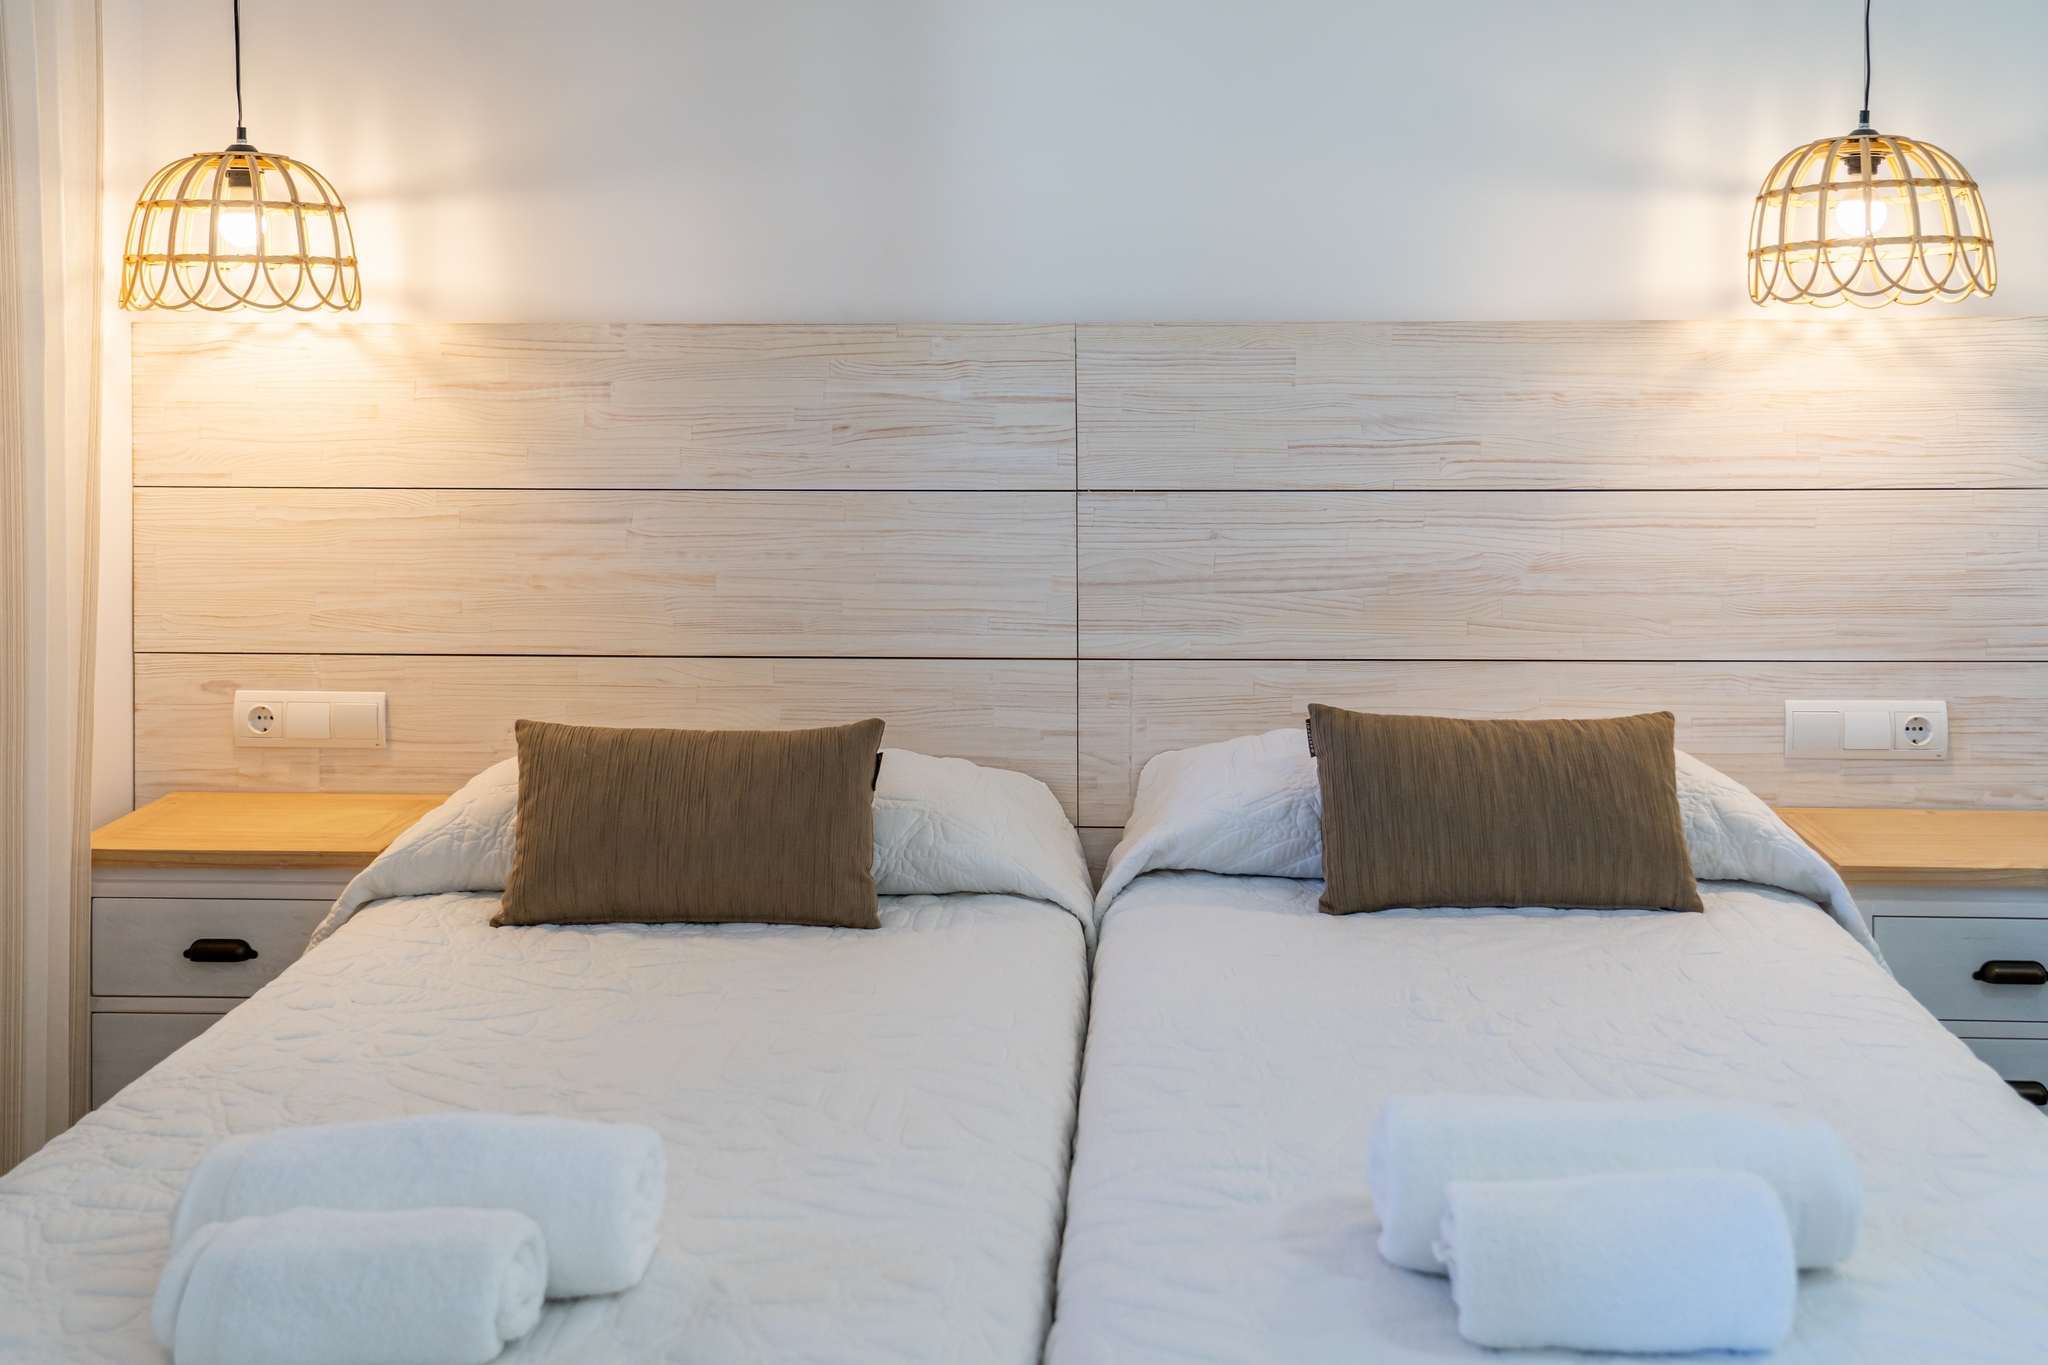 El dormitorio: personal e intransferible - mucho más que relax